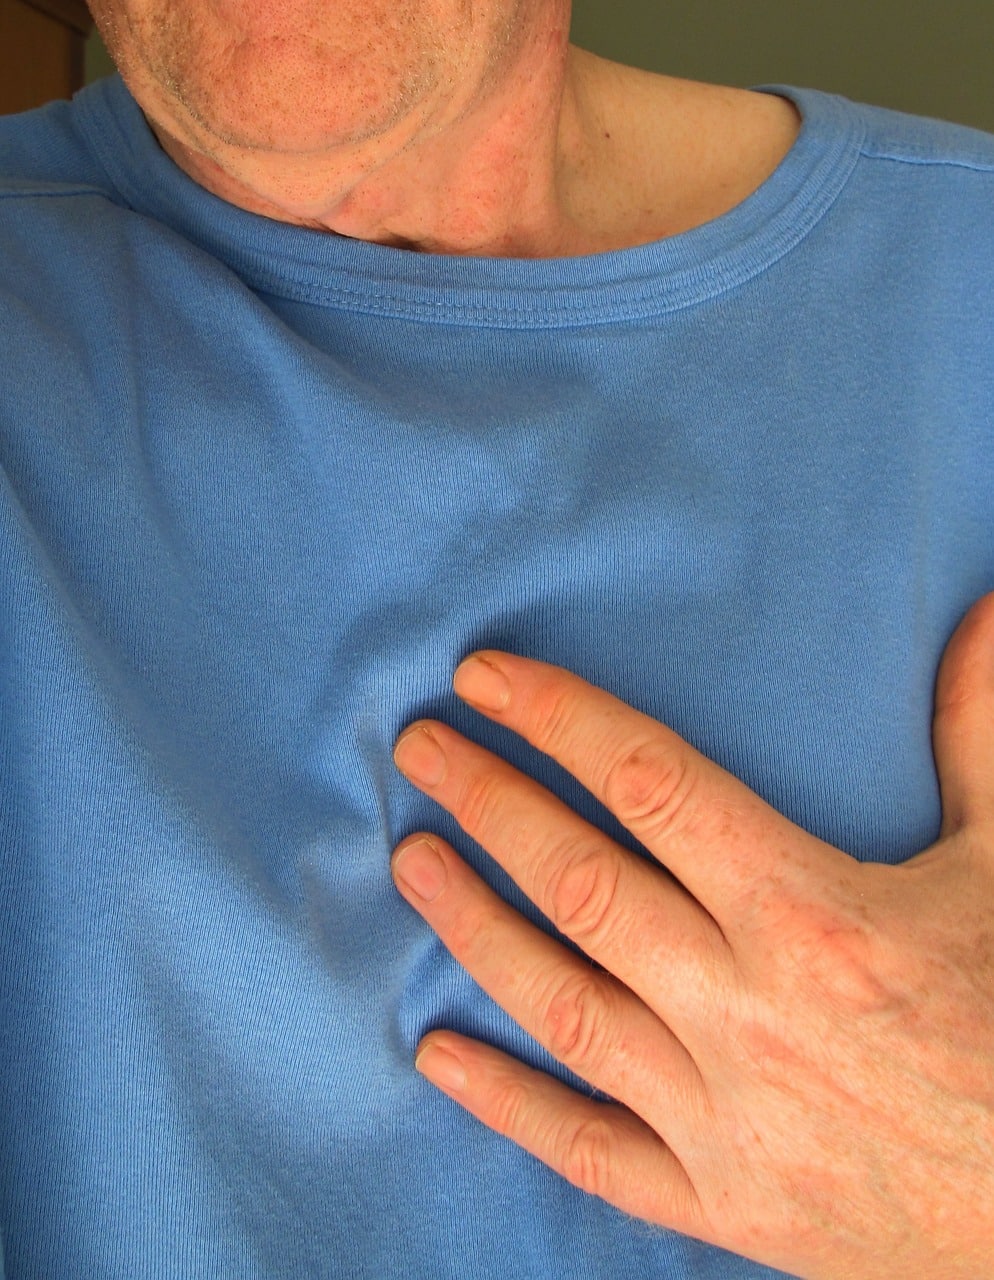 Un fármaco reduce los ataques al corazón…pero aumenta las infecciones